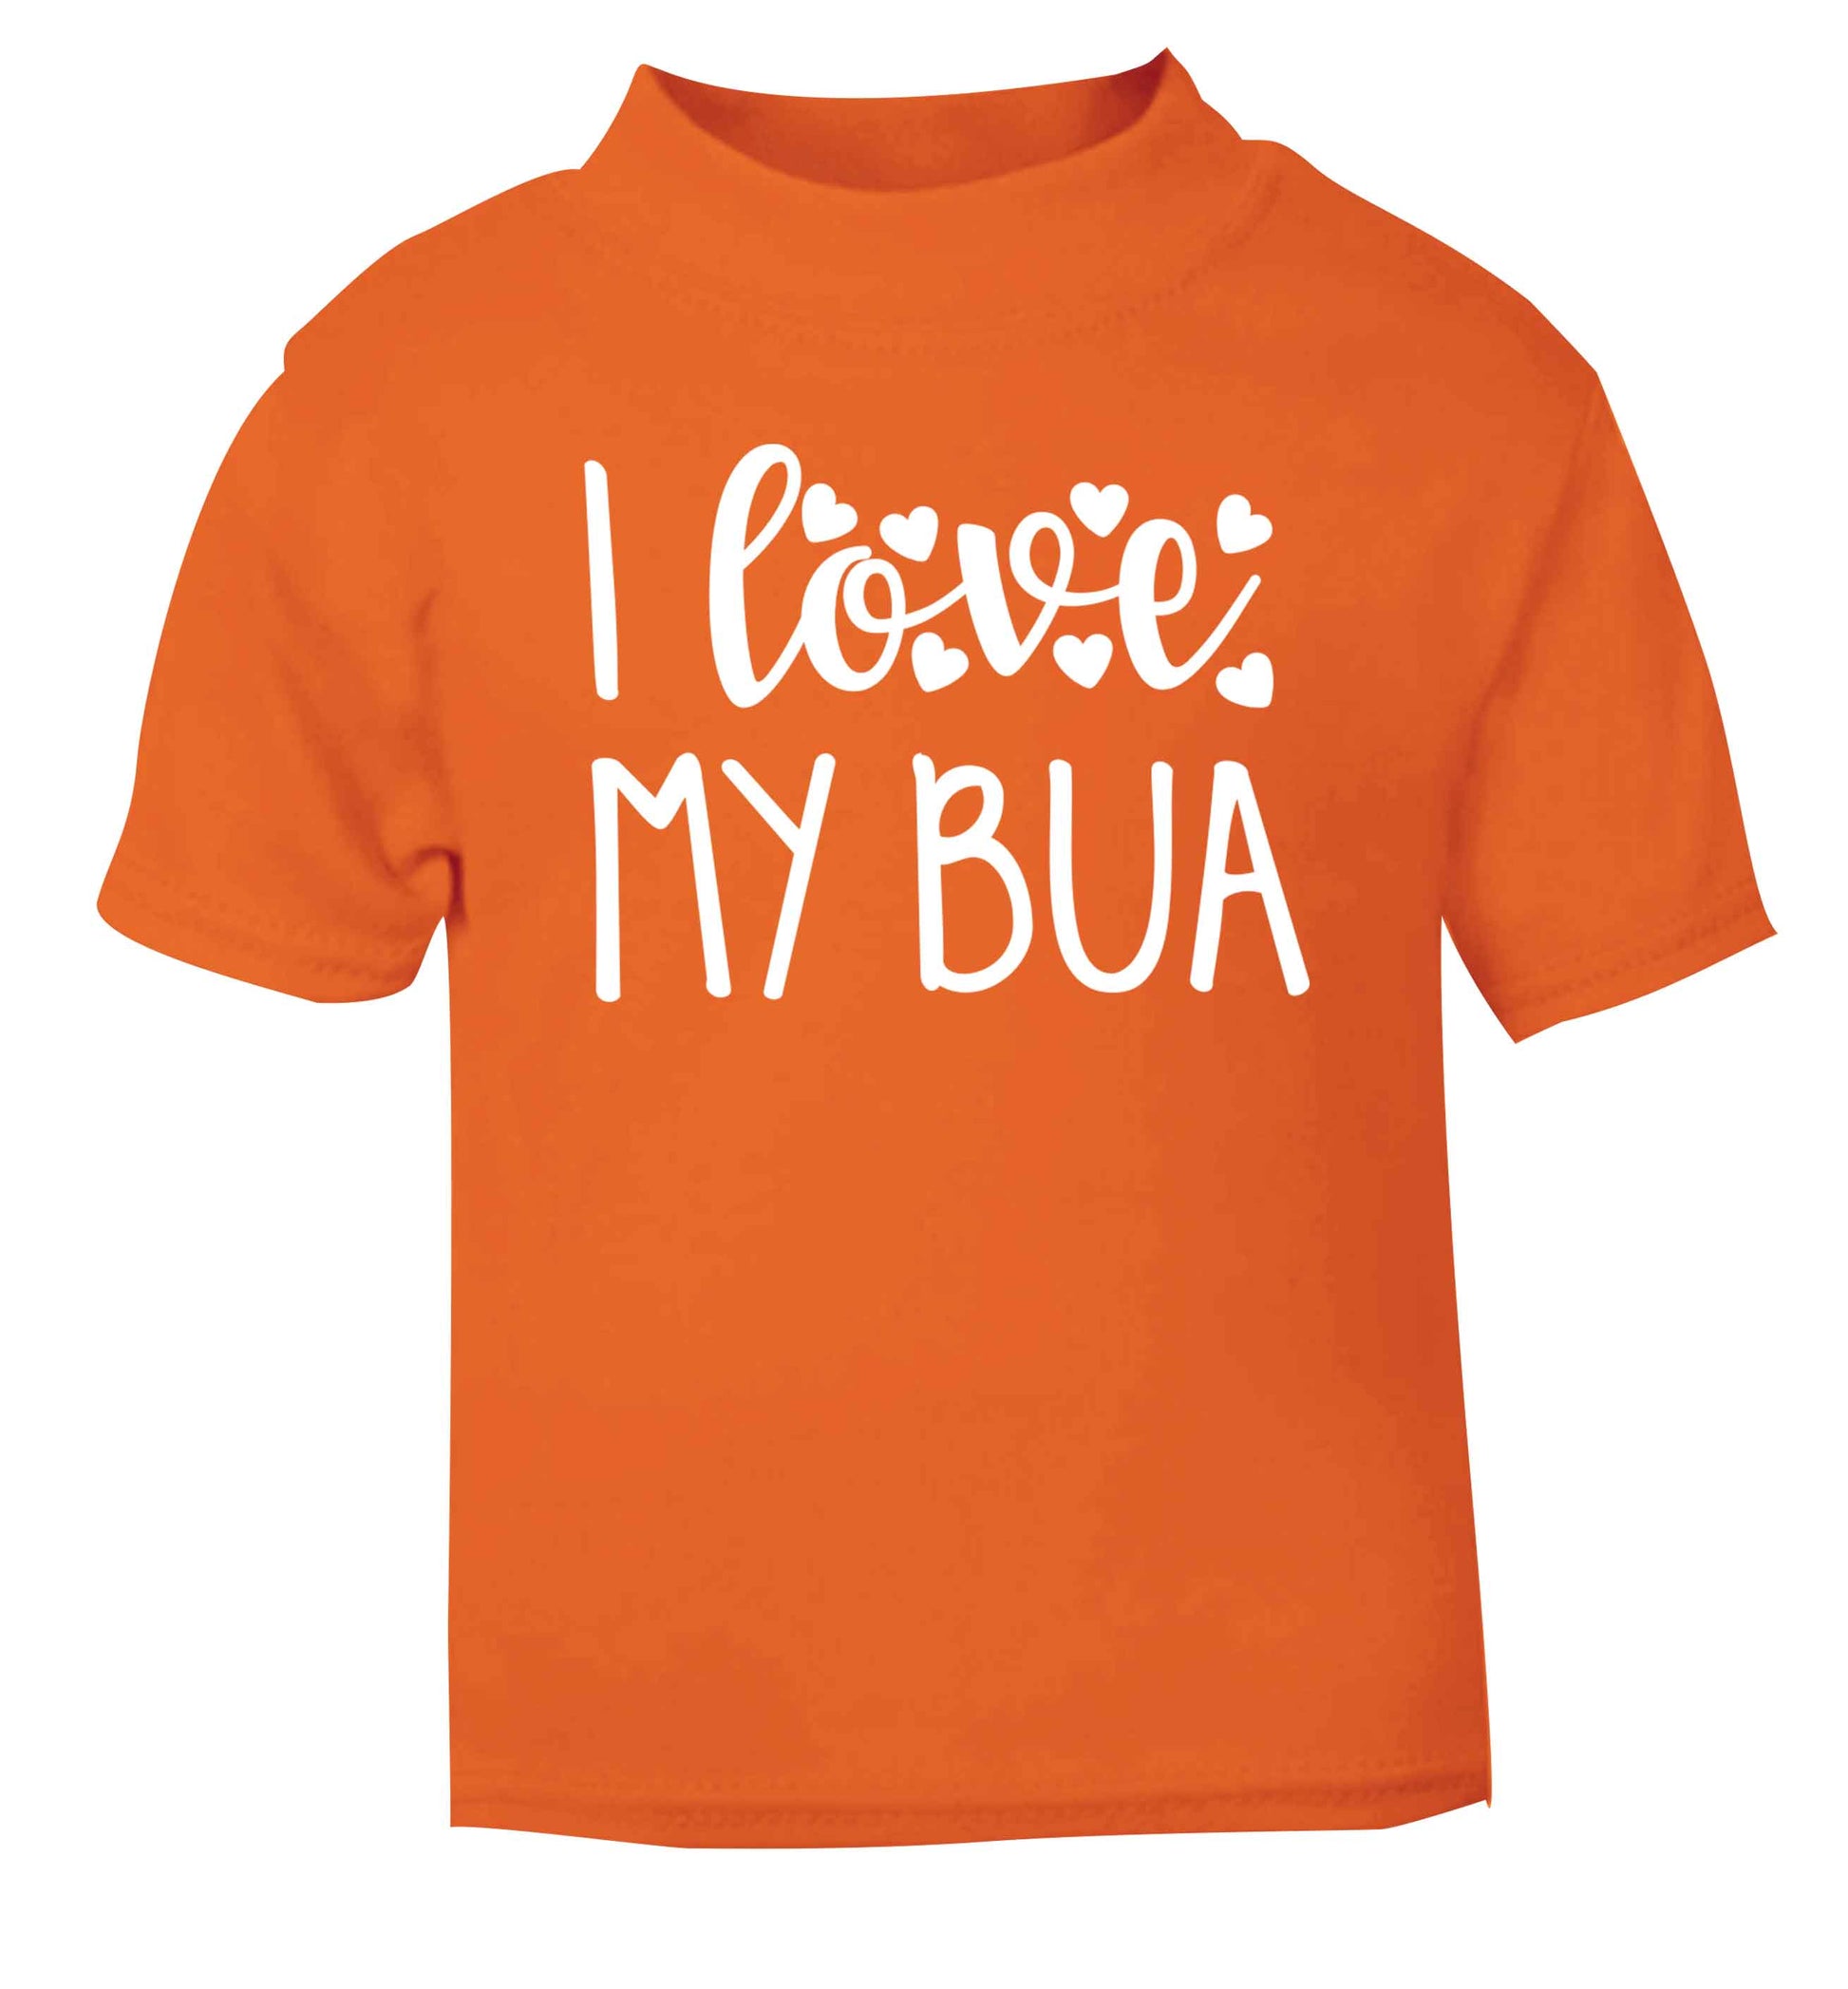 I love my bua orange Baby Toddler Tshirt 2 Years